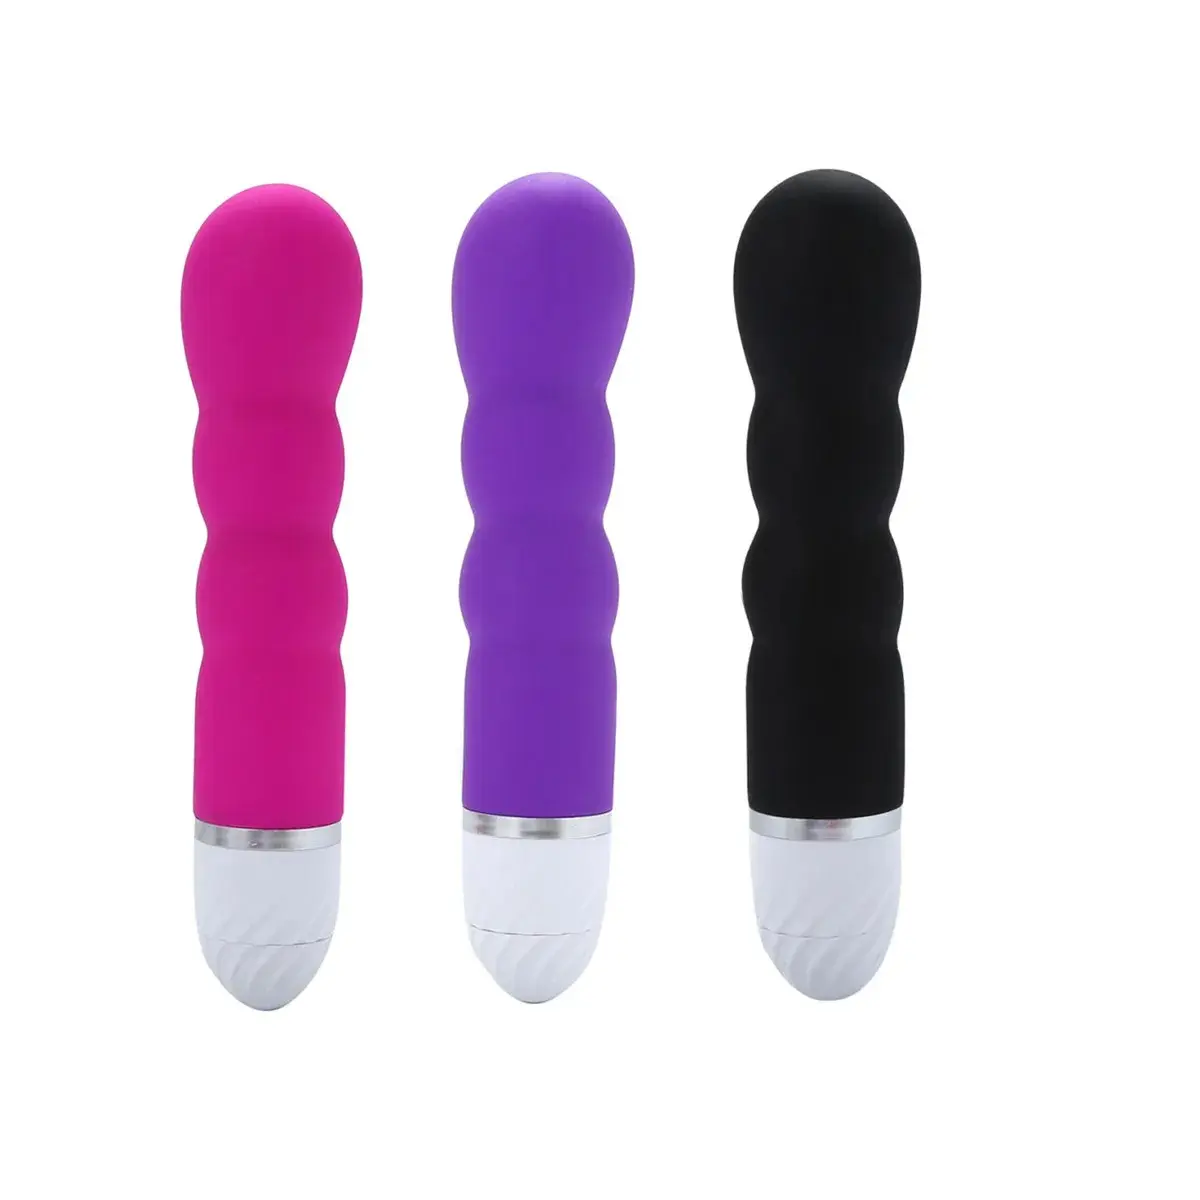 Silikon Günstige Dildo Vibrator Beliebte G-Punkt Vibrator Für Frauen Masturbation Adult Sexspielzeug Für Damen